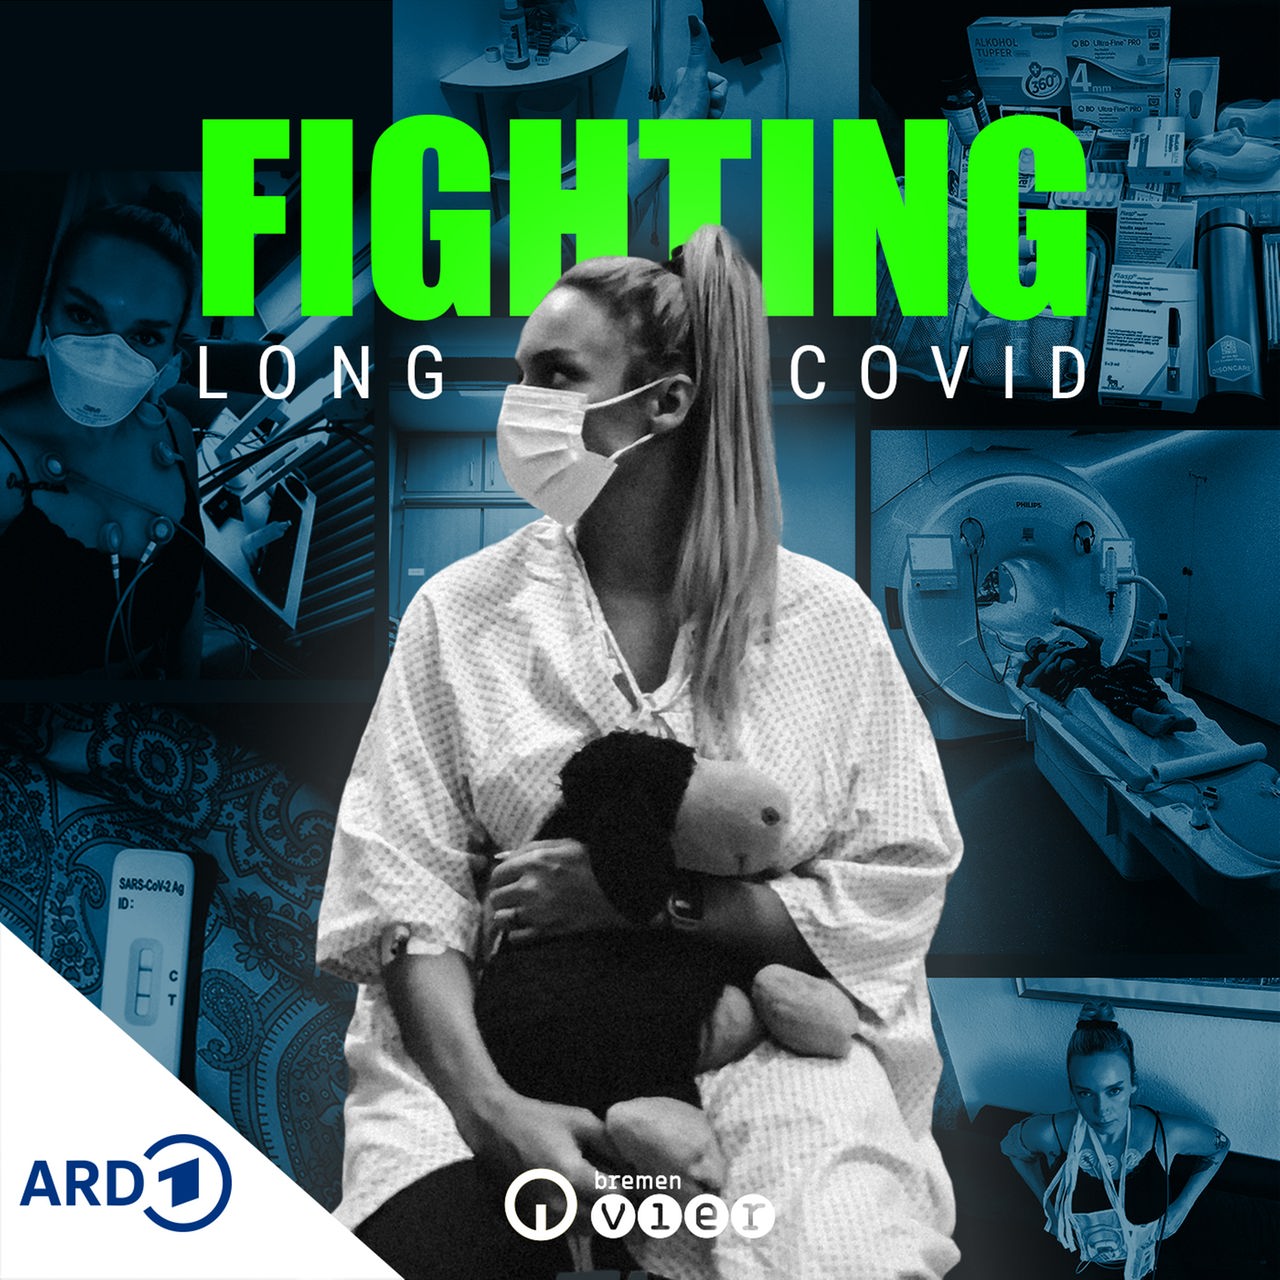 Podcast-Kachel zeigt eine Frau im OP-Hemd und mit OP-Maske, darauf der Schriftzug "Fighting Long Covid"